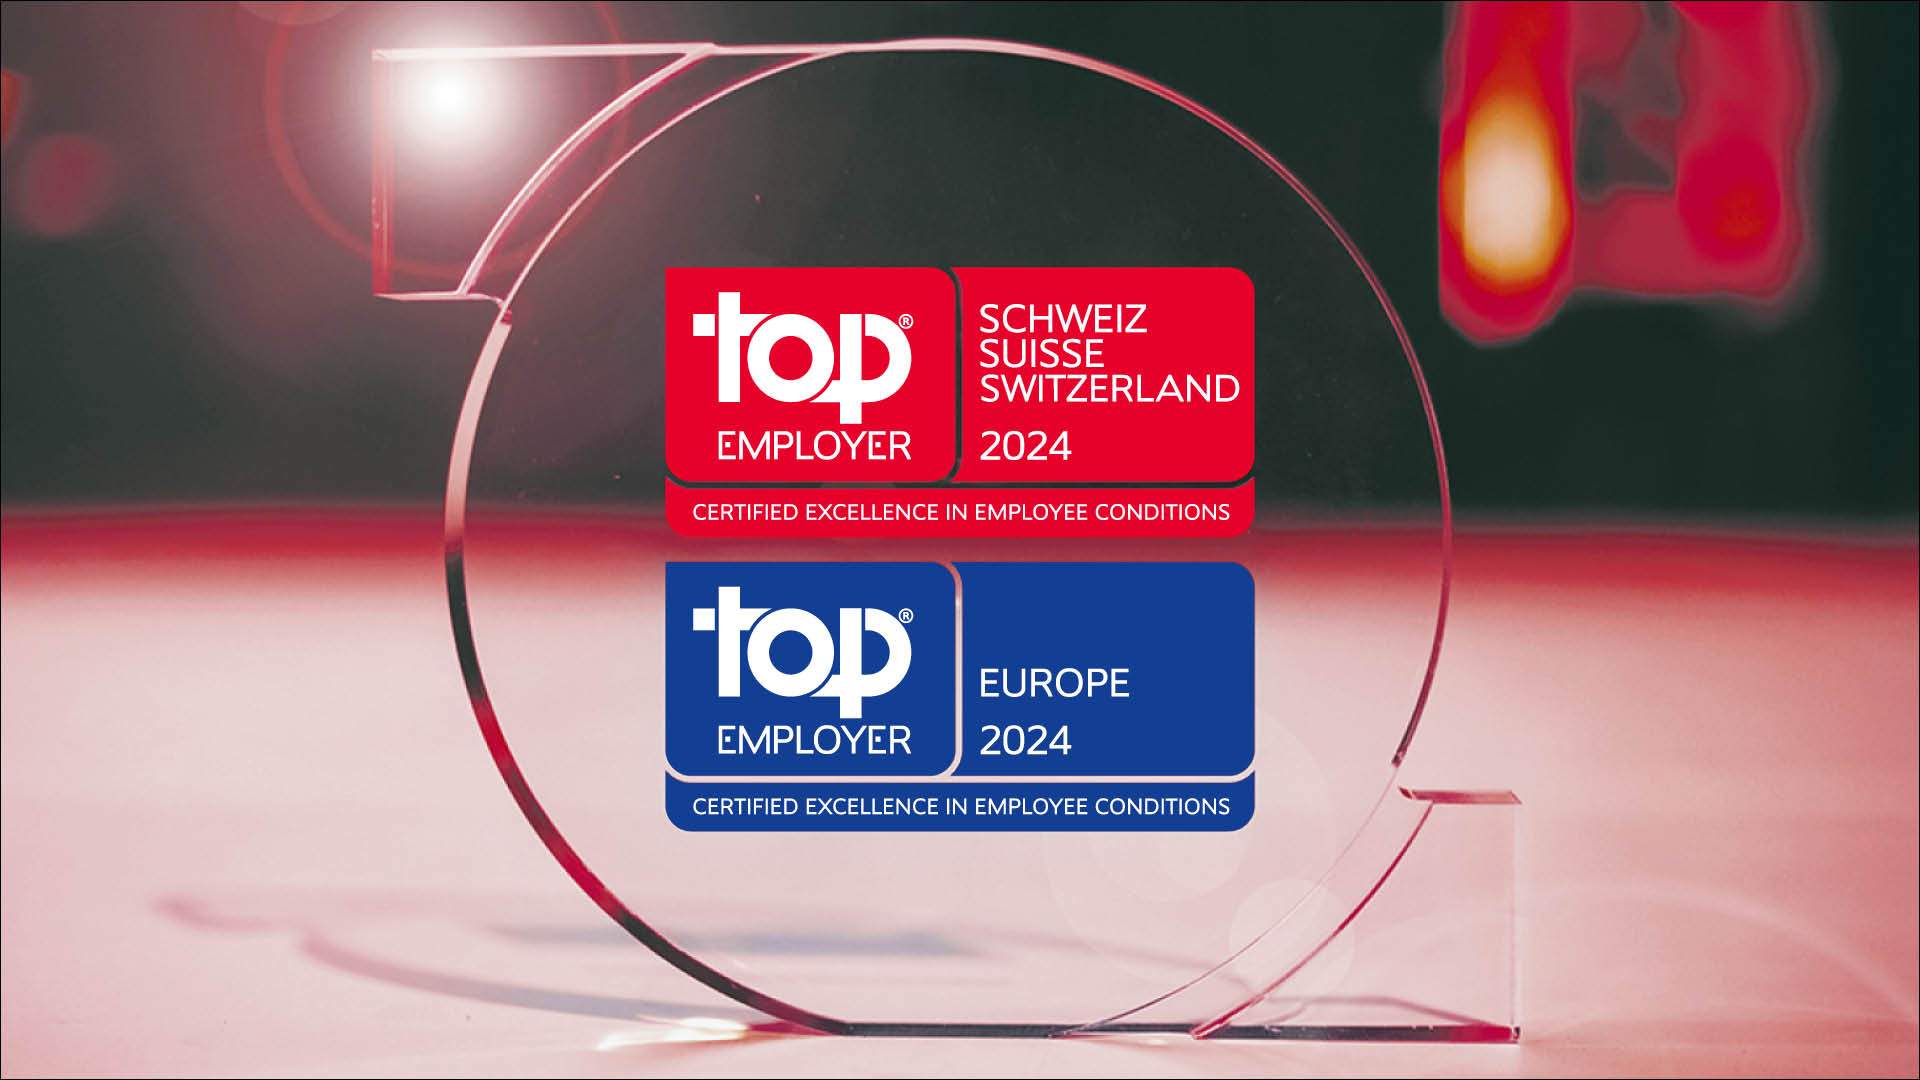 MSD Schweiz zum 12. Mal in Folge als Top Employer ausgezeichnet